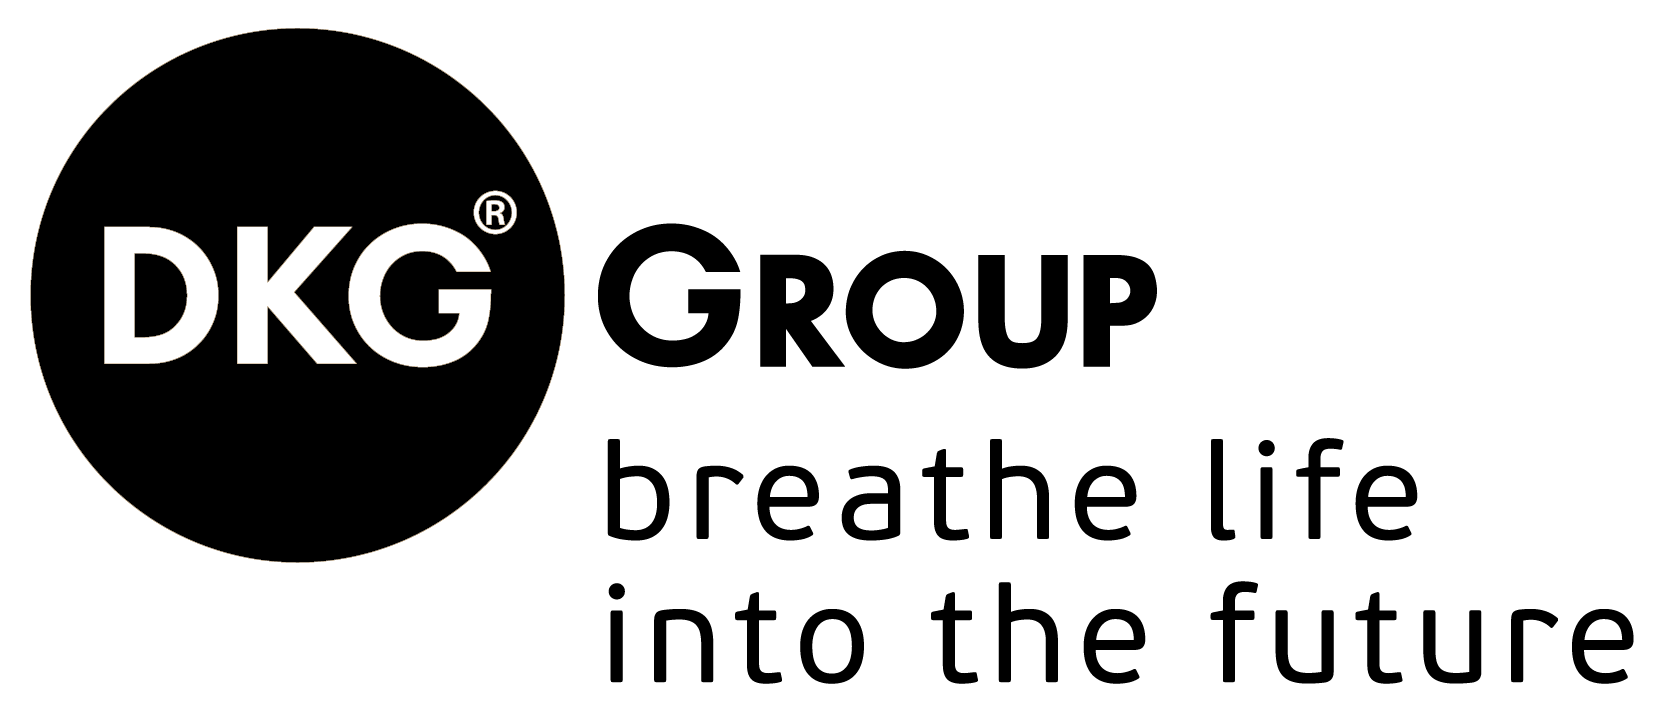 Dkg Logo - MEDIA KIT - The DKG GROUP